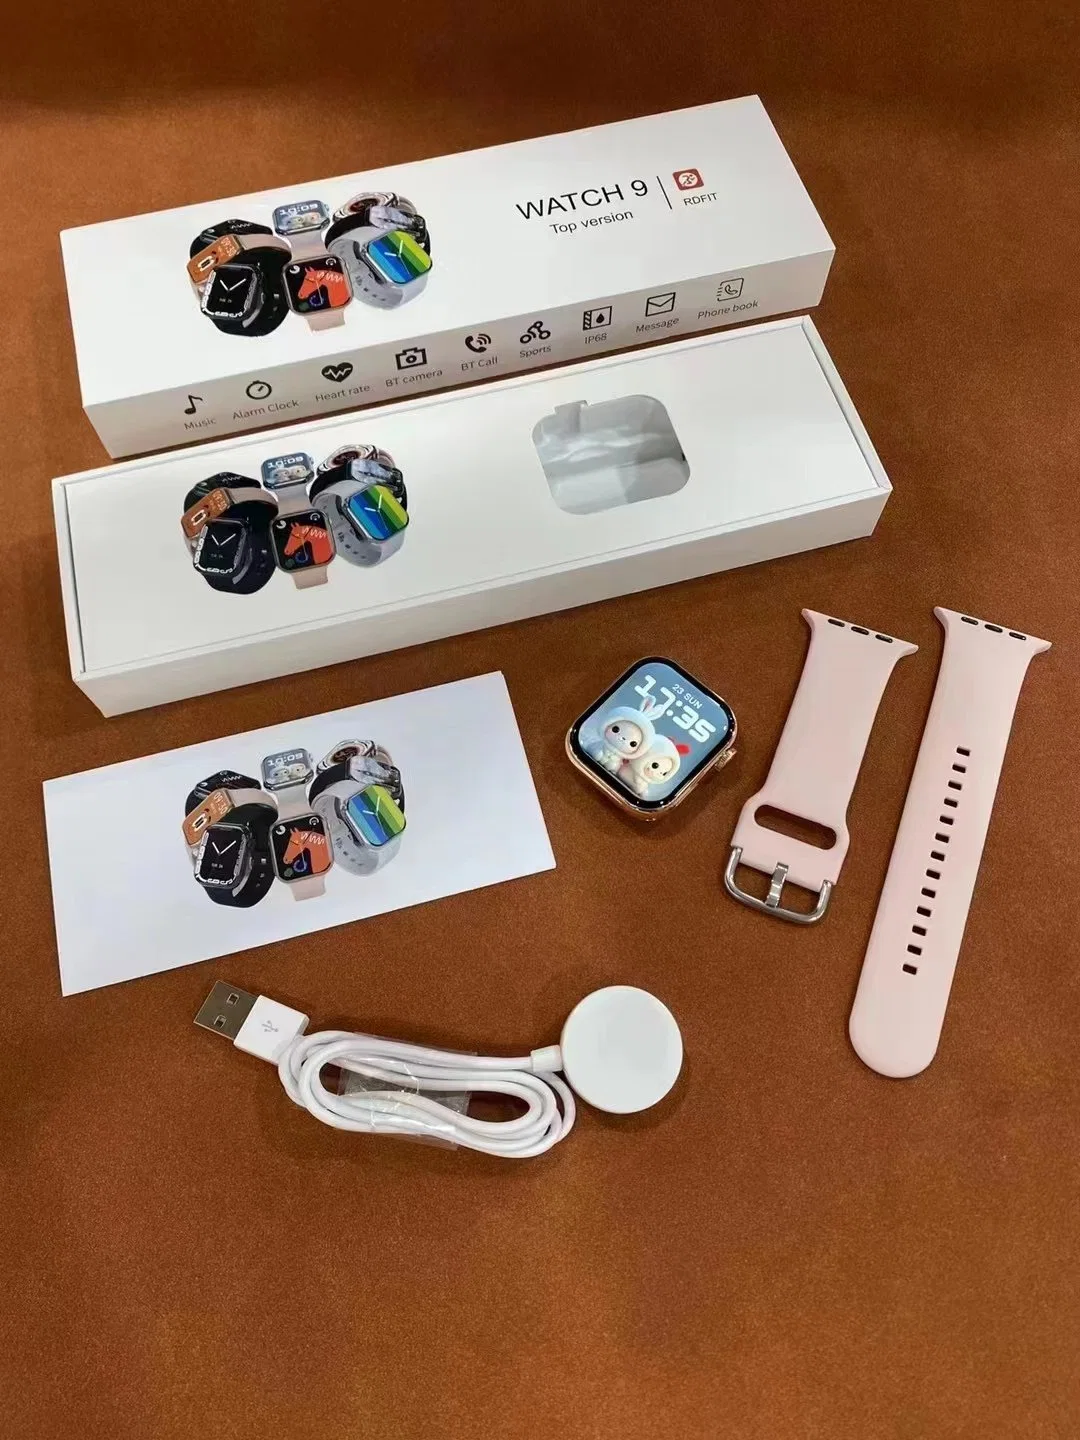 Oktober Neue High Quality Watch 9 Neue Smart Watch kann Anrufe annehmen und tätigen, geeignet für Hawei, Android, Aple